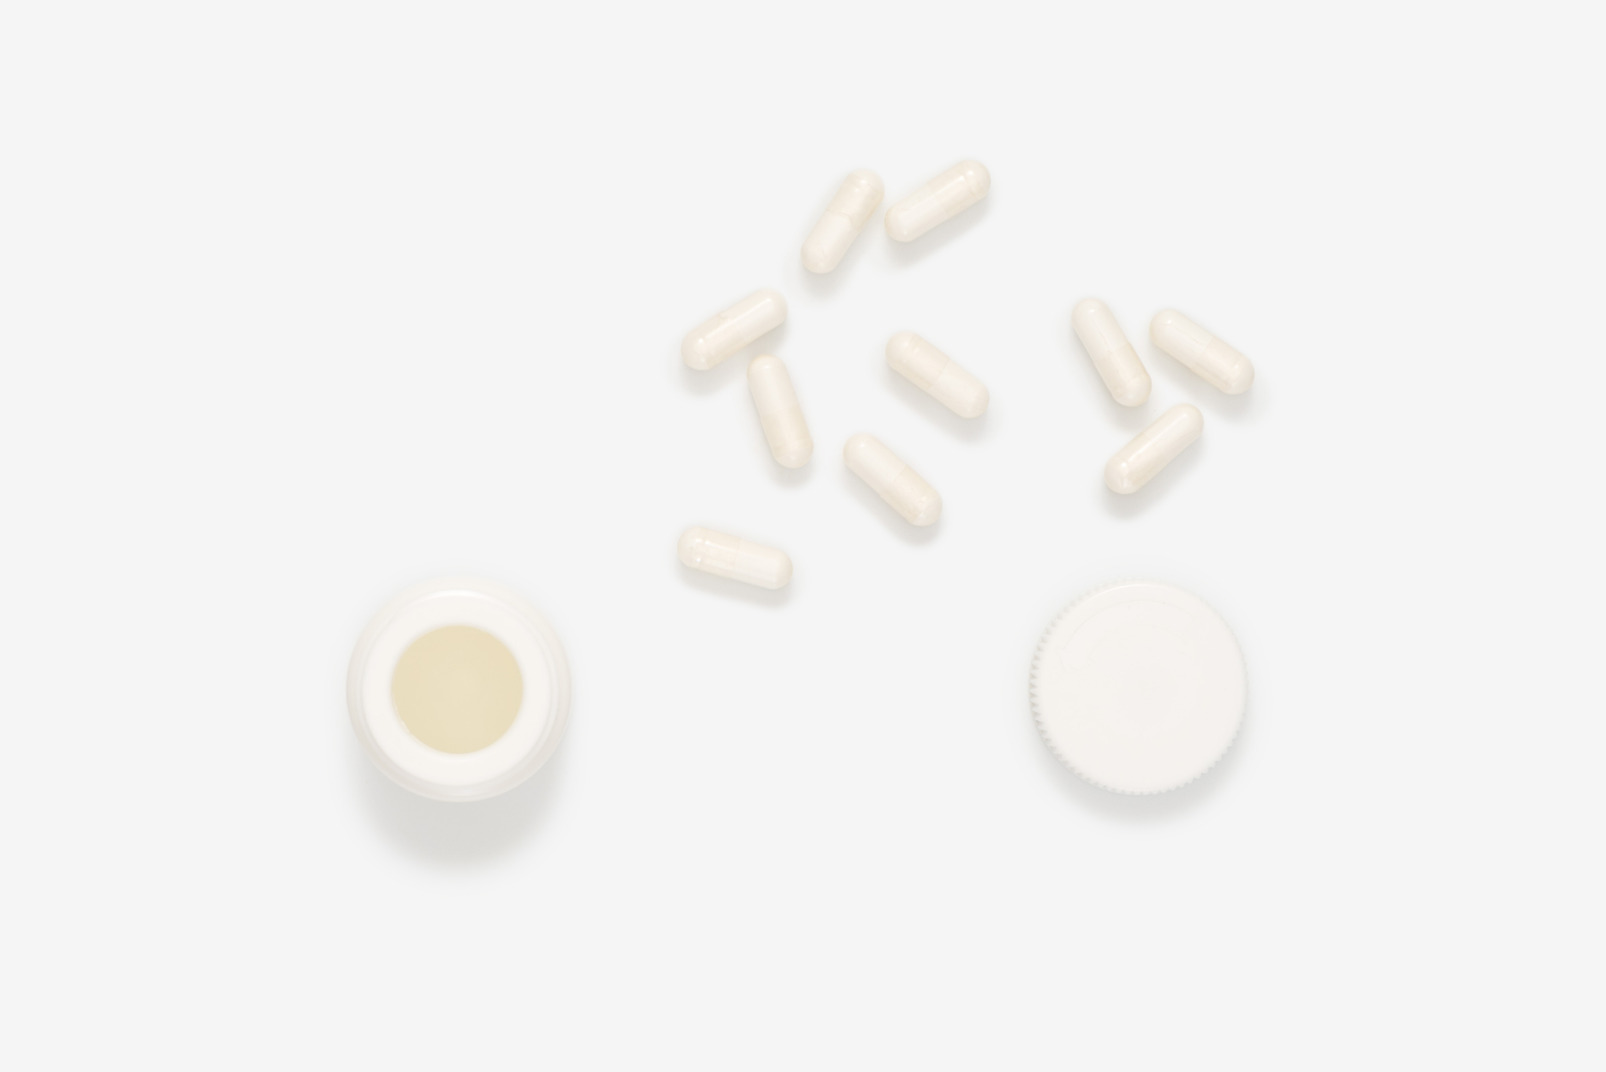 Scattered white pills